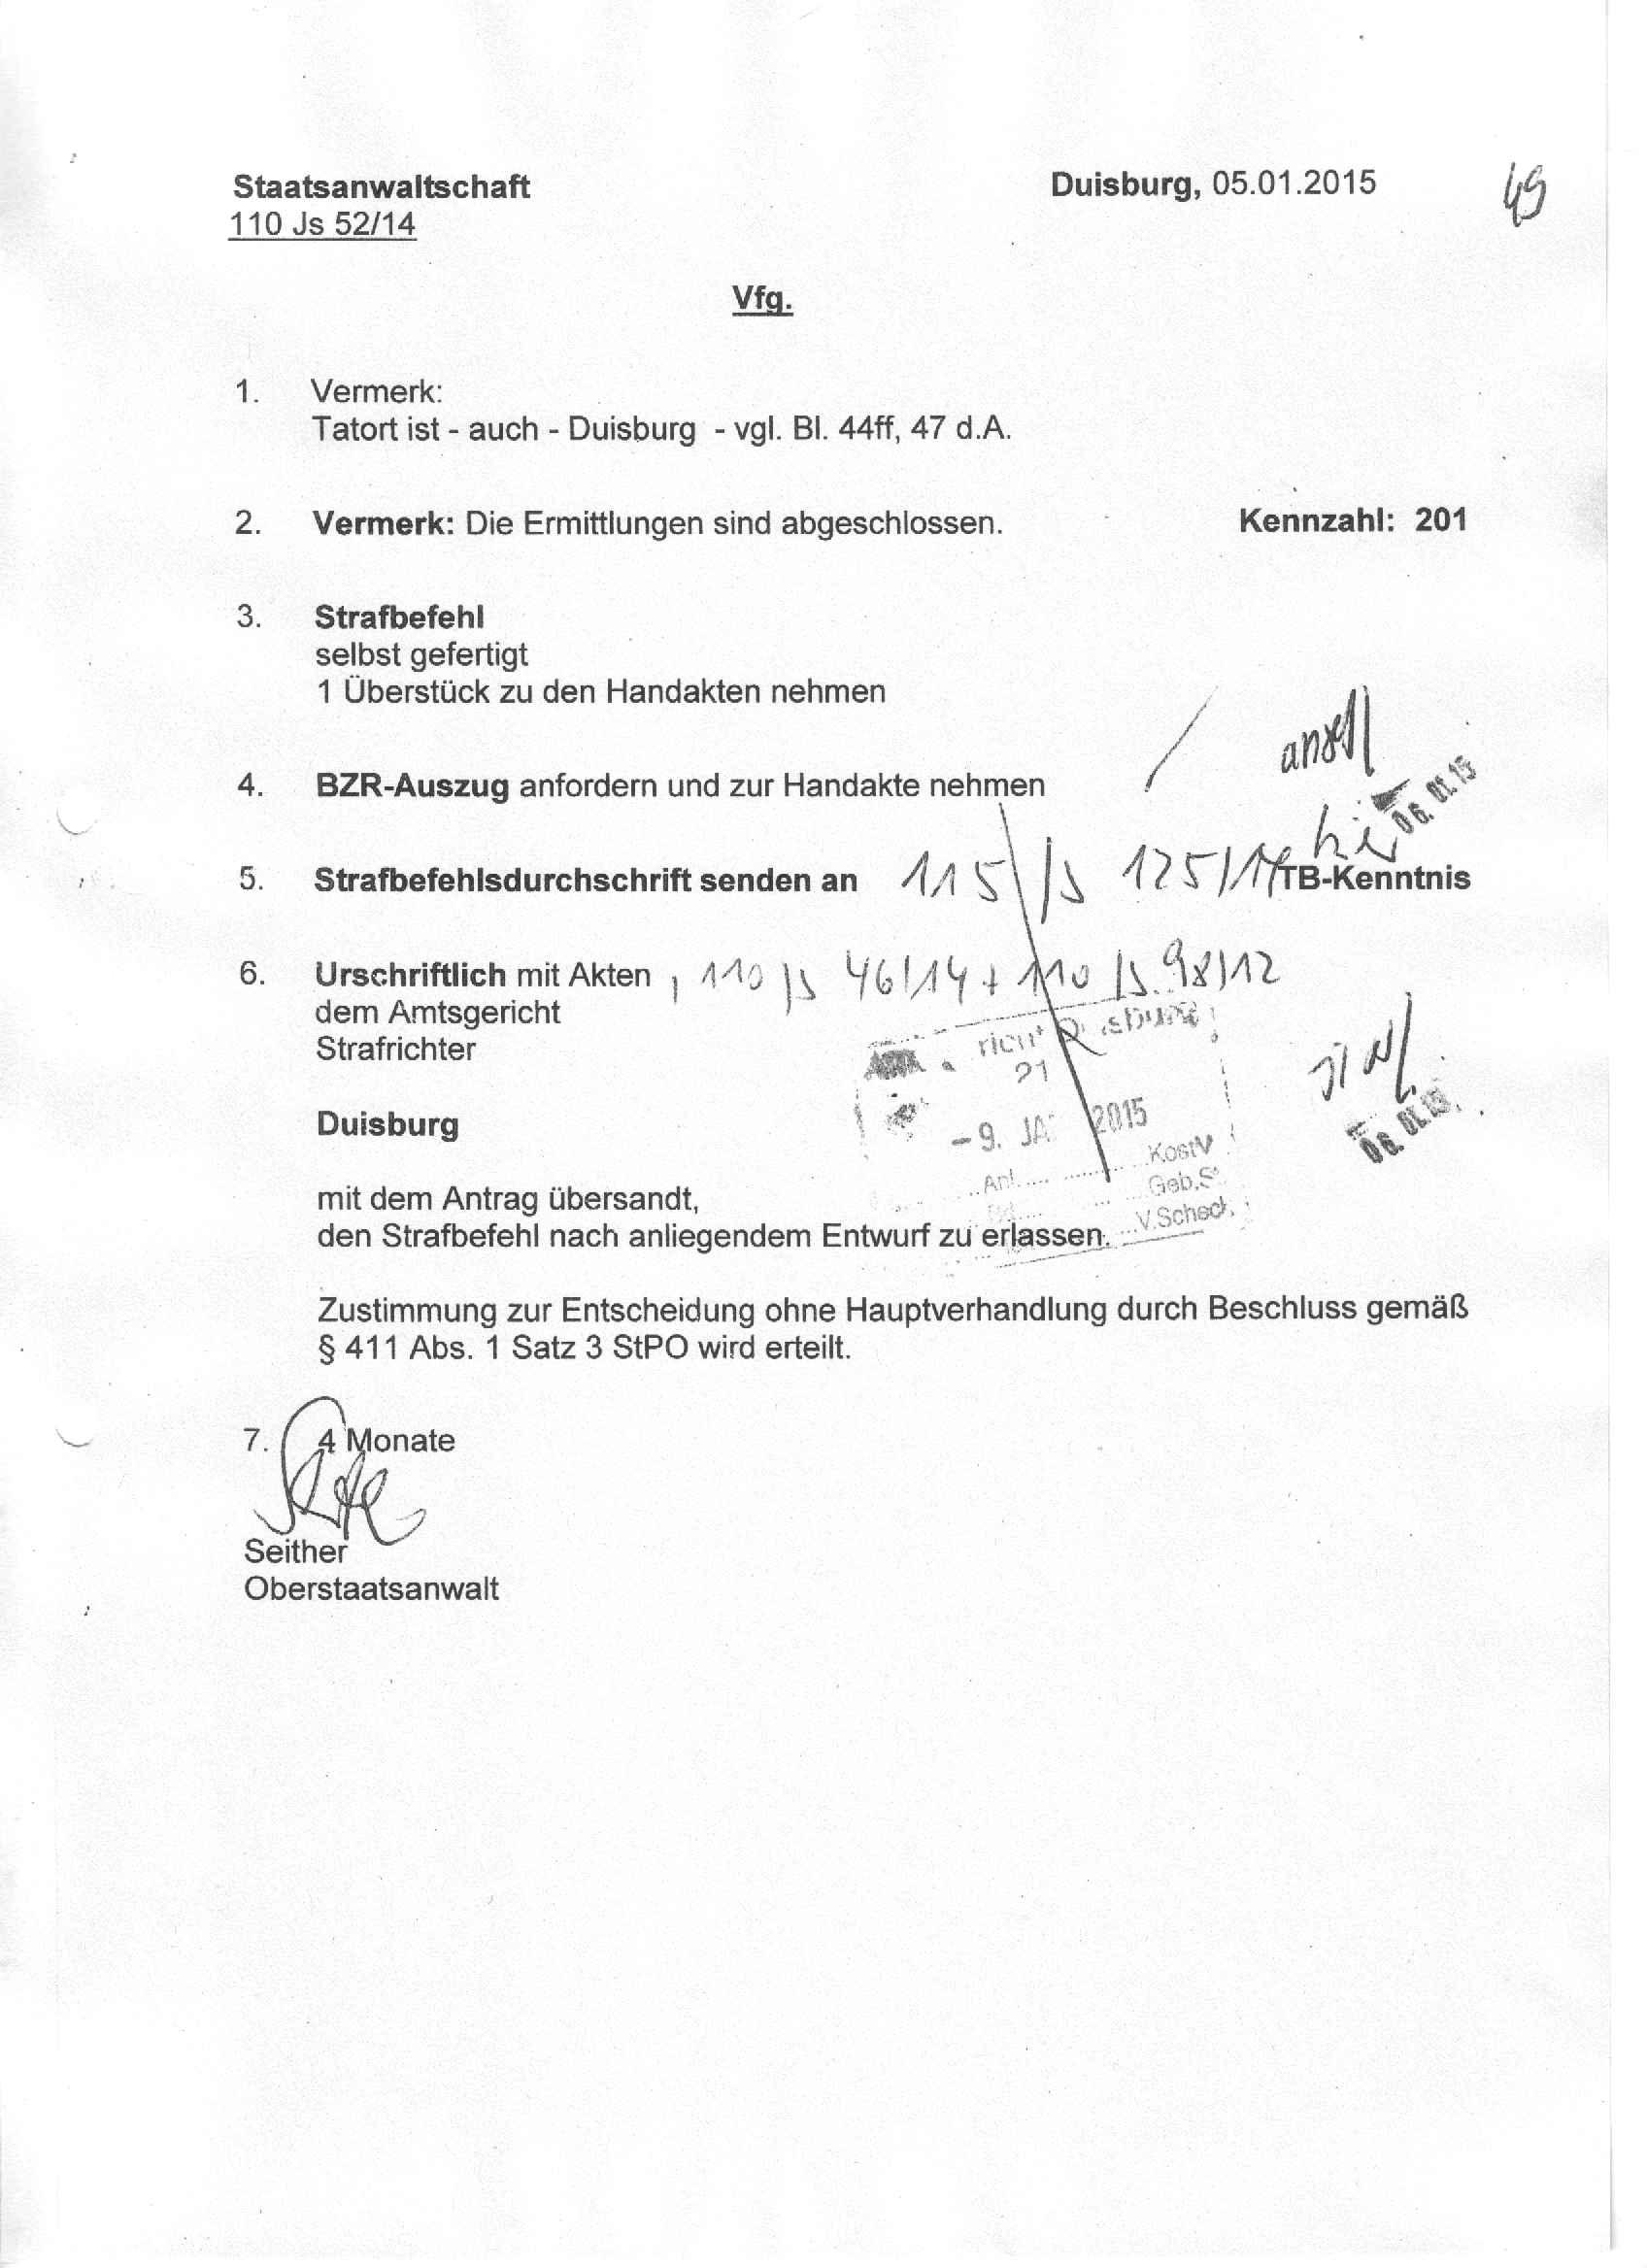 Blatt 49 der Akte, Verfügung des Oberstaatsanwalts Seither vom 05.01.2015; Vermerk: Tatort ist – auch – Duisburg, vgl. Bl. 44 ff, 47 der Akte